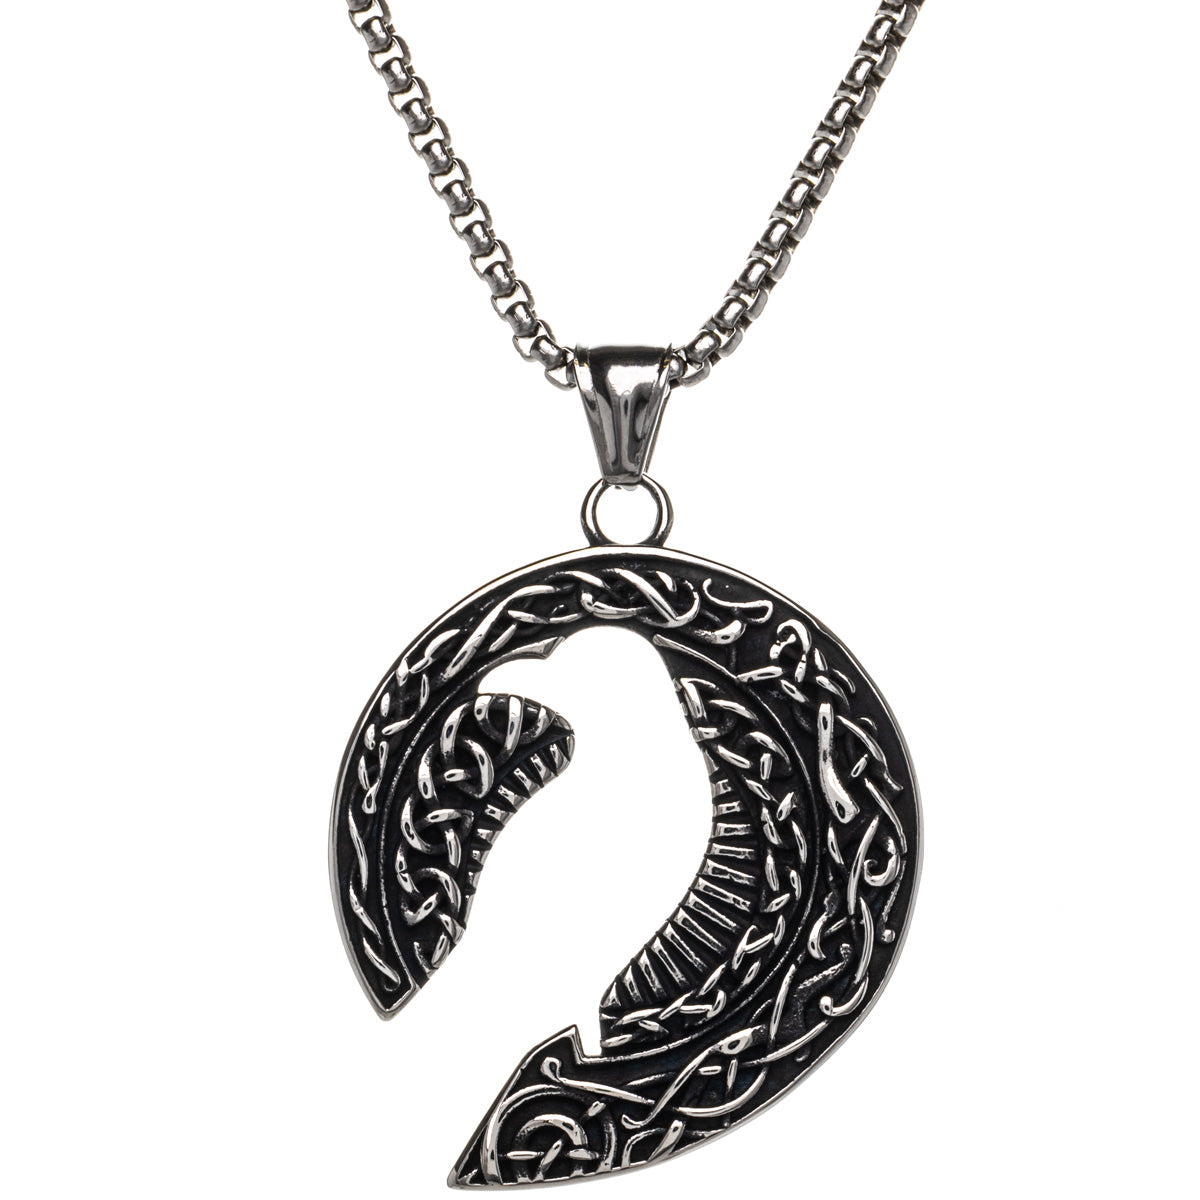 Raven silhouette pendant necklace (Steel 316L)